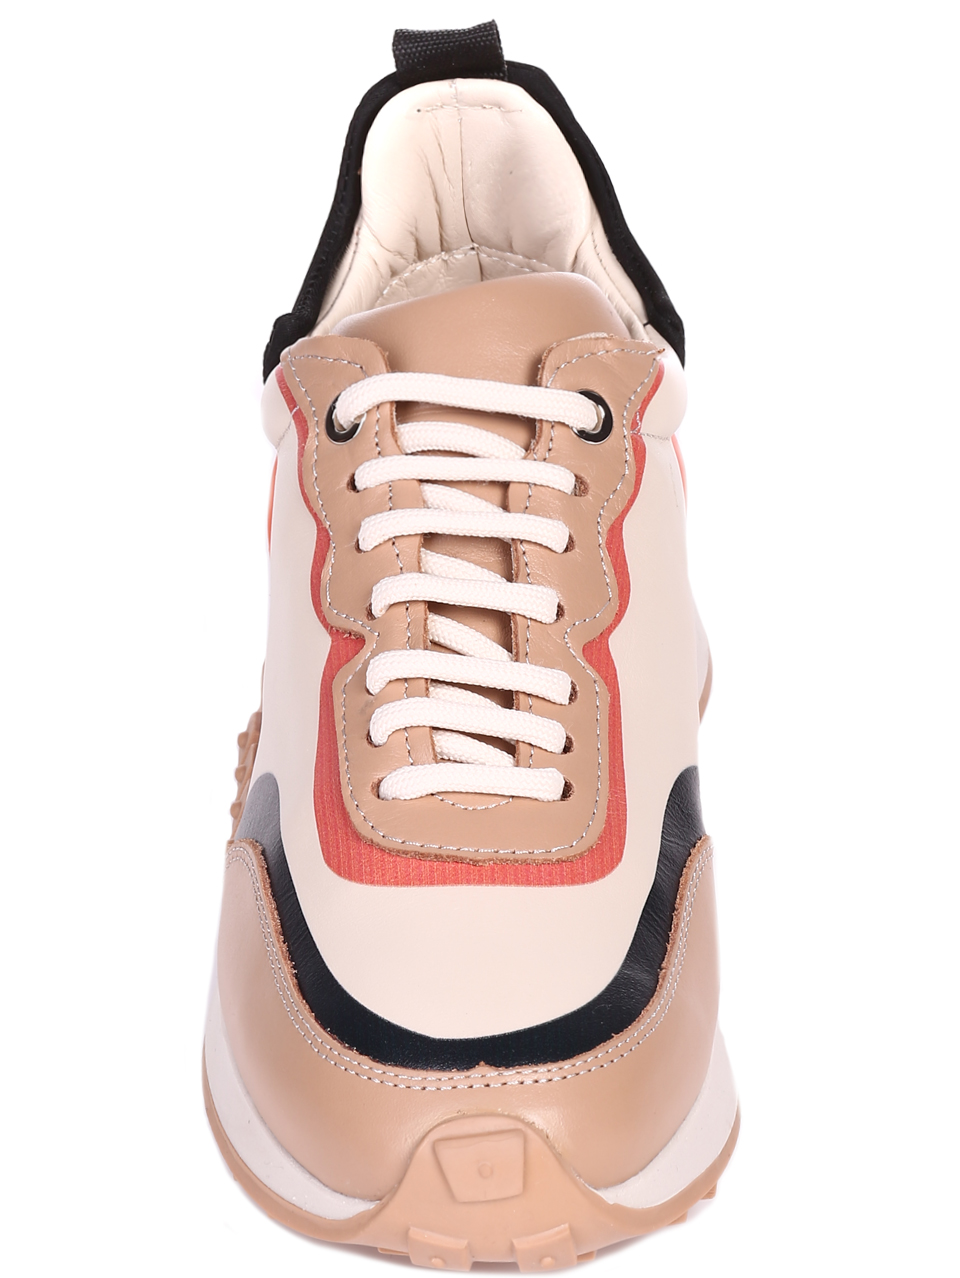 Ежедневни дамски обувки от естествена кожа в бежво 3AT-22301 beige